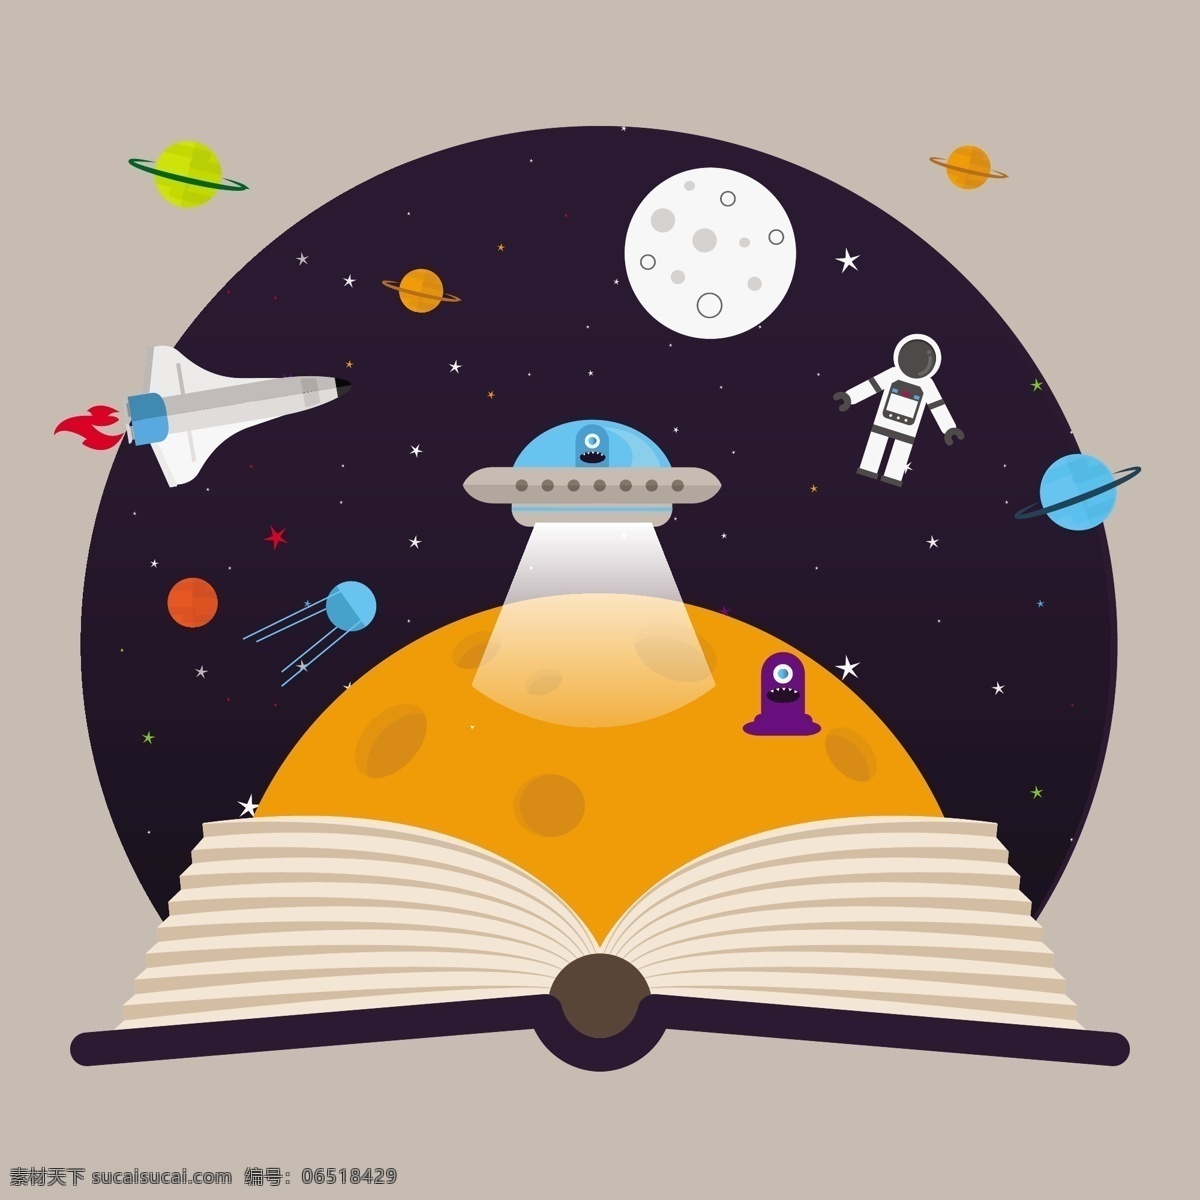 孩子 想象 空间 飞船 外星人 书籍 儿童 星 平 月球 船舶 星系 平面设计 行星 方式 异形 太阳 暗 不明飞行物 太空船 银河系 黑色